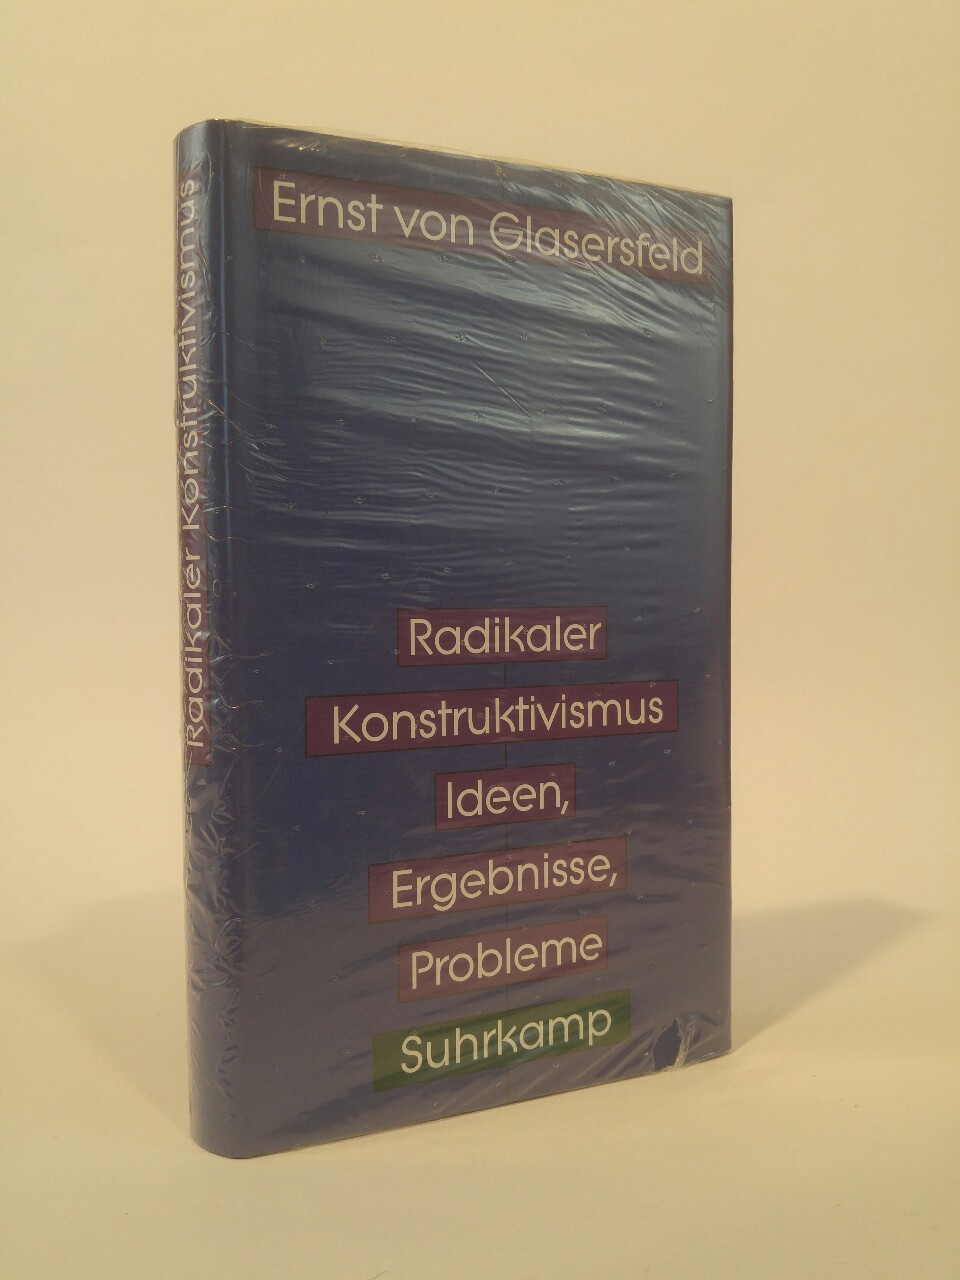 Radikaler Konstruktivismus. [Neubuch] Ideen, Ergebnisse, Probleme. 1. Auflage - Glasersfeld, Ernst von, Siegfried J. Schmidt  und Wolfram K. Köck